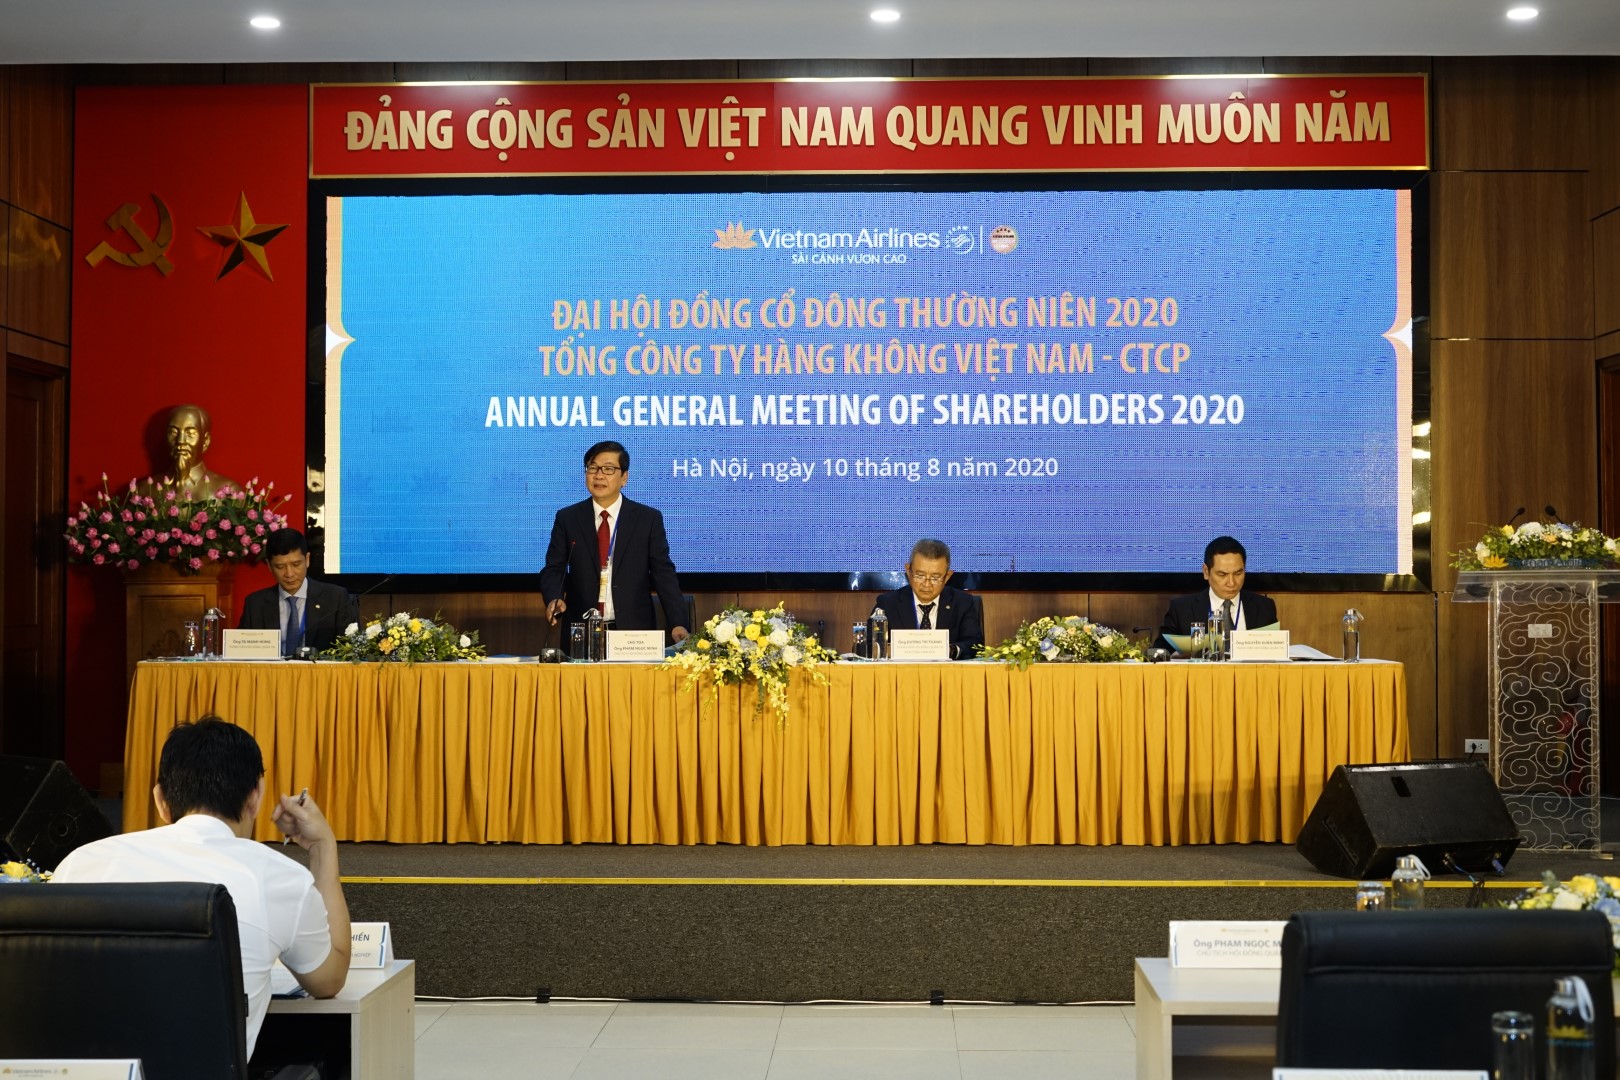 Tổng công ty Hàng không Việt Nam - Vietnam Airlines (HVN) tổ chức thành công Đại hội đồng cổ đông thường niên năm 2020